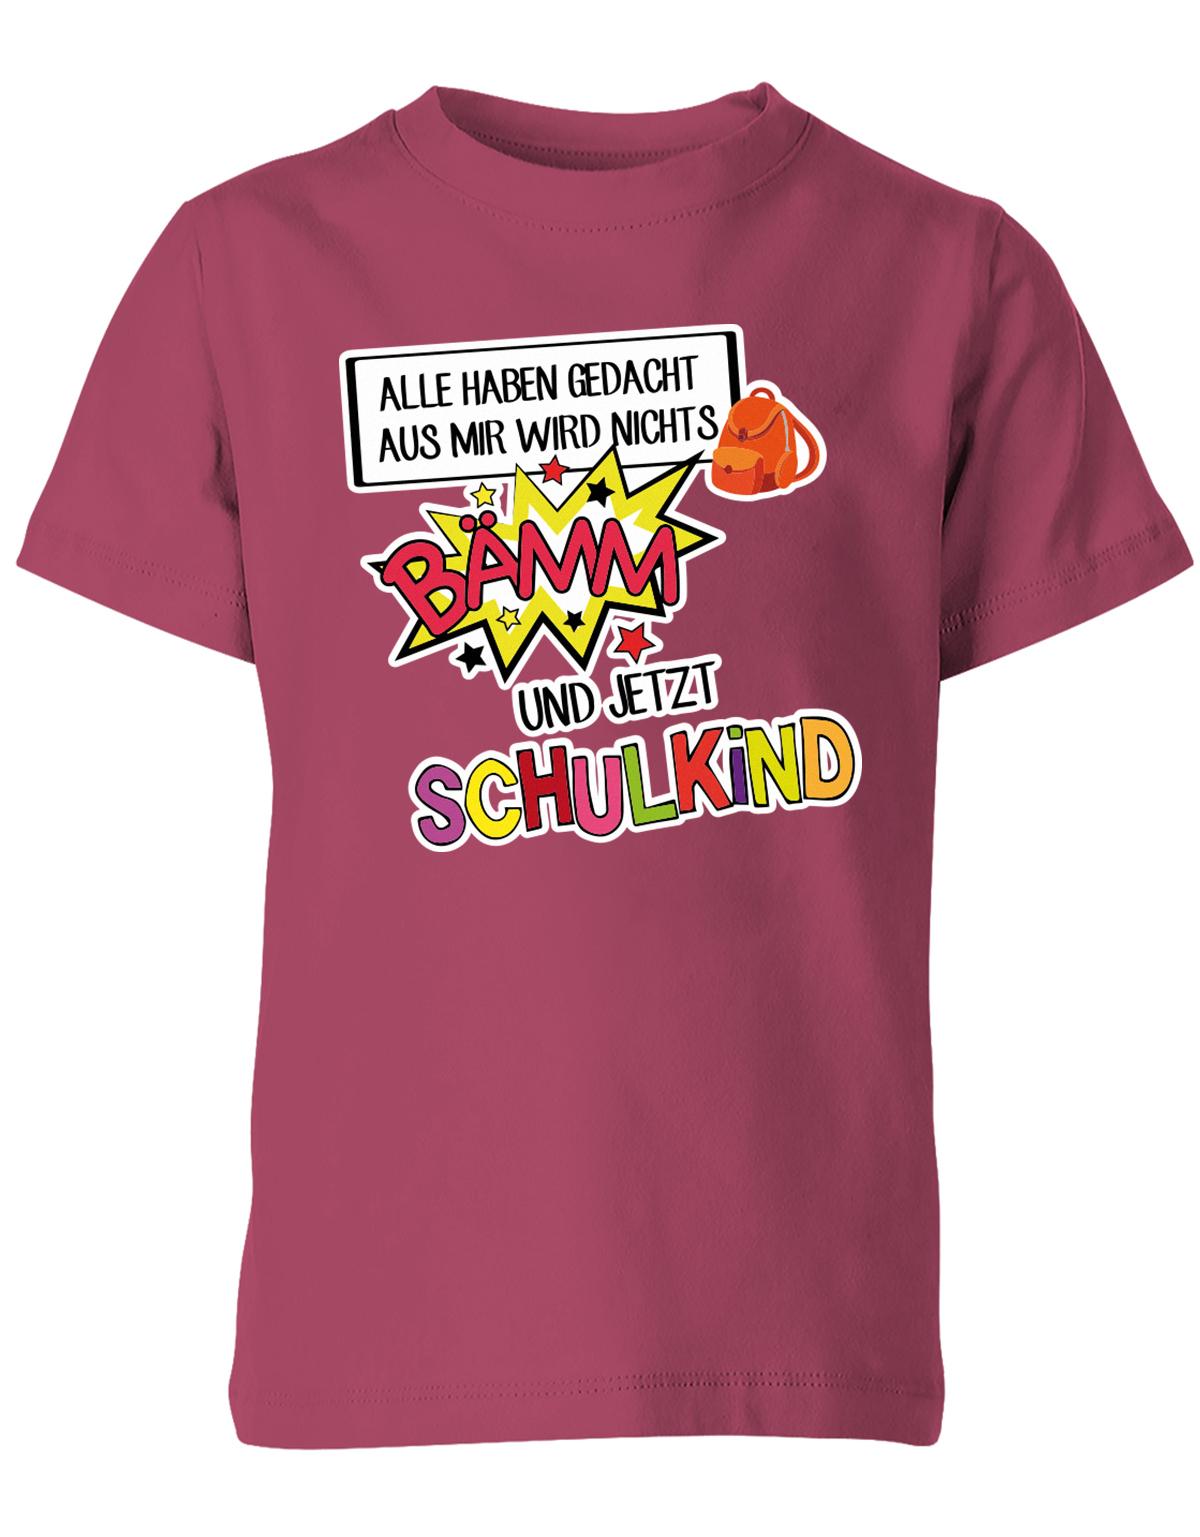 Alle haben gedacht aus mir wird nichts - bämm Schulkind - Einschulung T-Shirt Sorbet